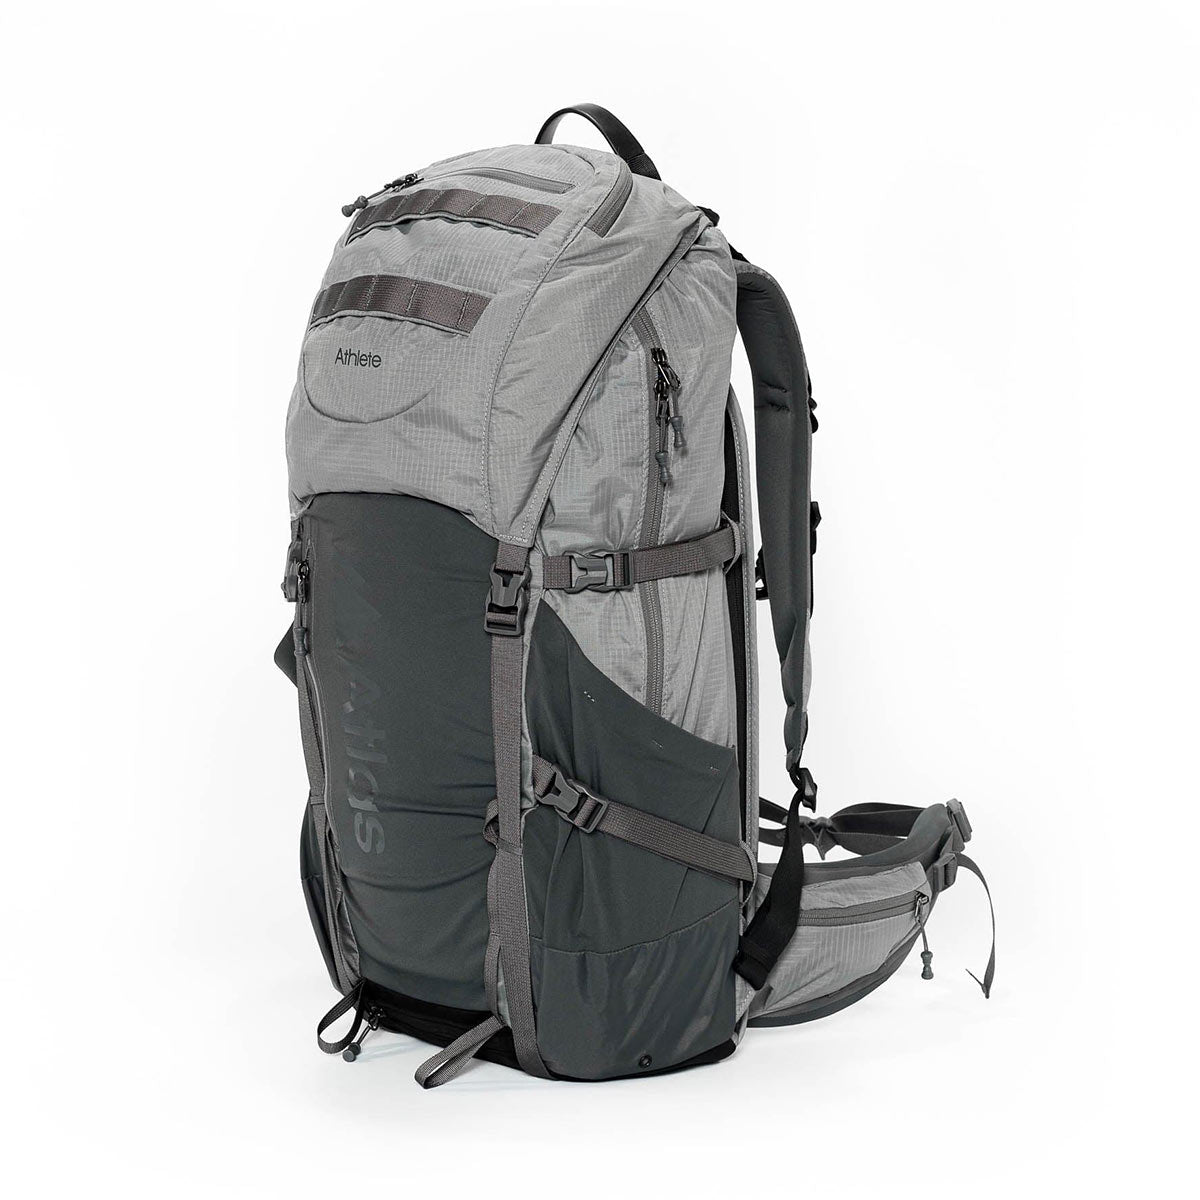 Atlas Athlete Medium Backpack (Gray)